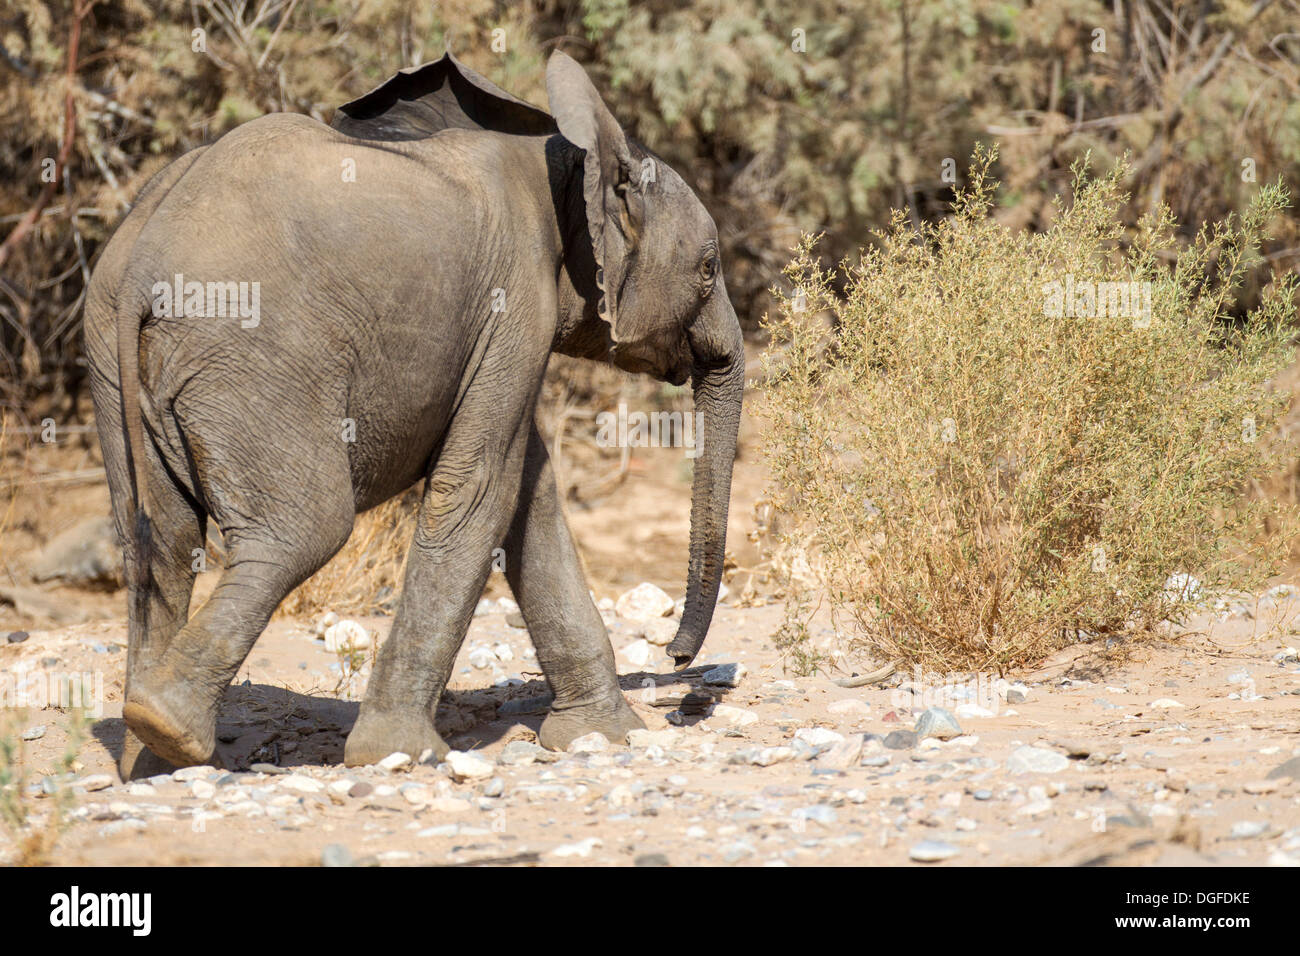 African Elephant (Loxodonta africana), young, Kaokoland, Kunene, Namibia Stock Photo